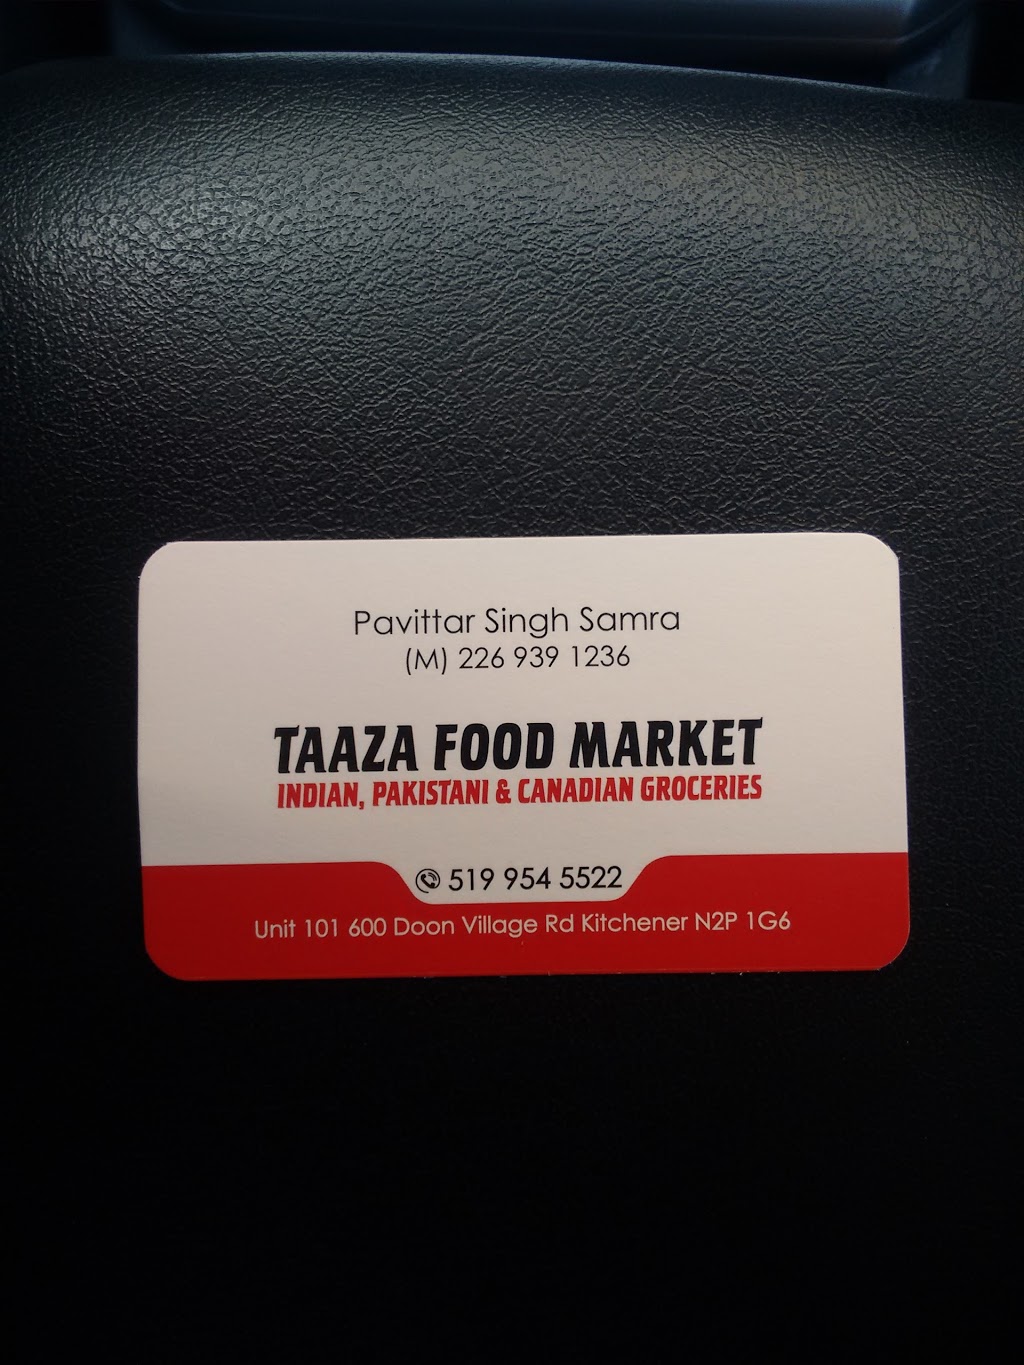 TAAZA Food Market | store | 600 Doon Village Road Kitchener N2P 1G6, Doon Village Rd, Kitchener, ON N2P 1G6, Canada | 5199545522 OR +1 519-954-5522